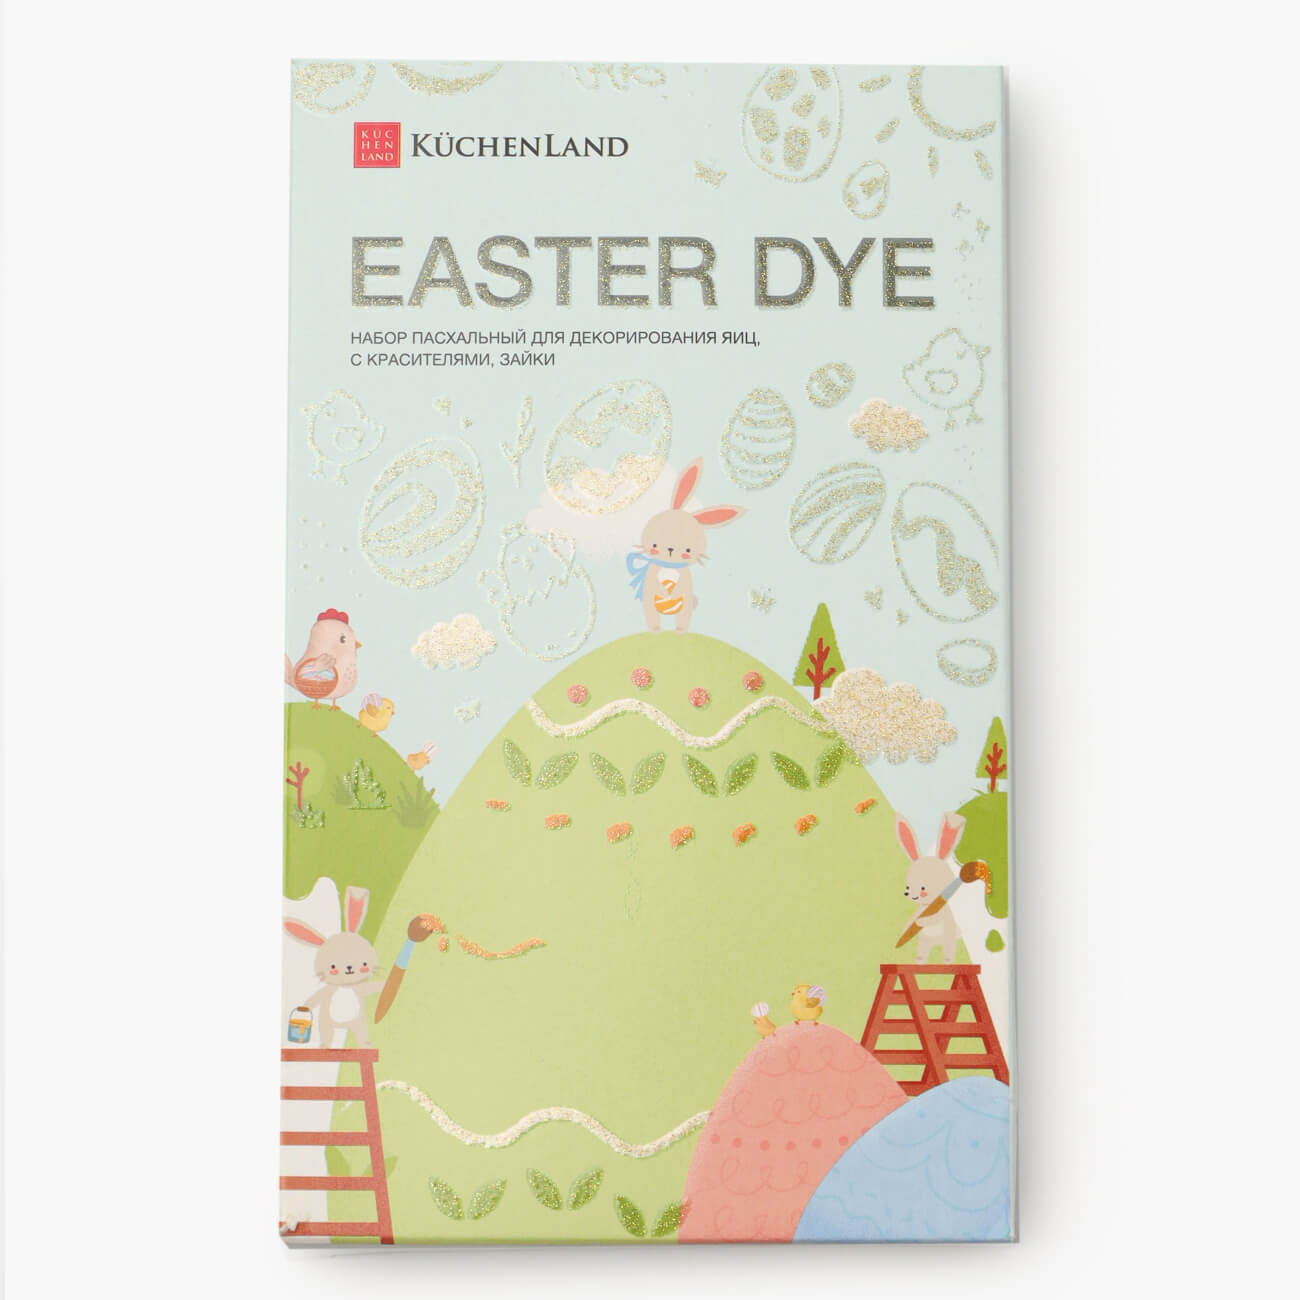 Набор пасхальный для декорирования яиц, 4 цвета/17 пр, Зайки, Easter dye набор заготовок для декорирования easter 6 фанера 10х14 см